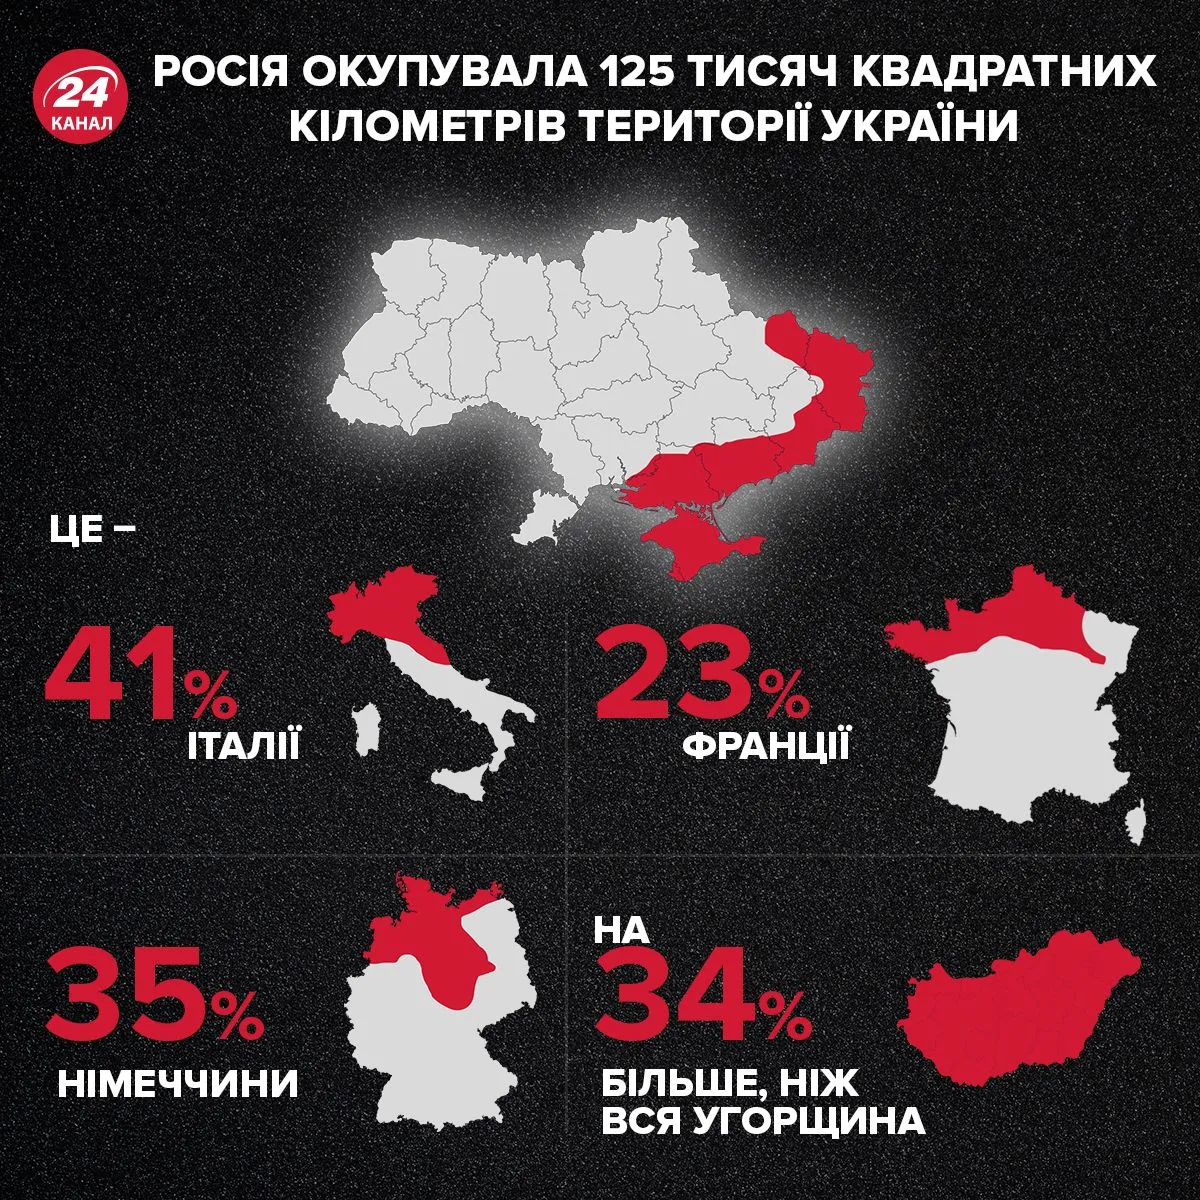 Скільки  територій України окупувала Росія 